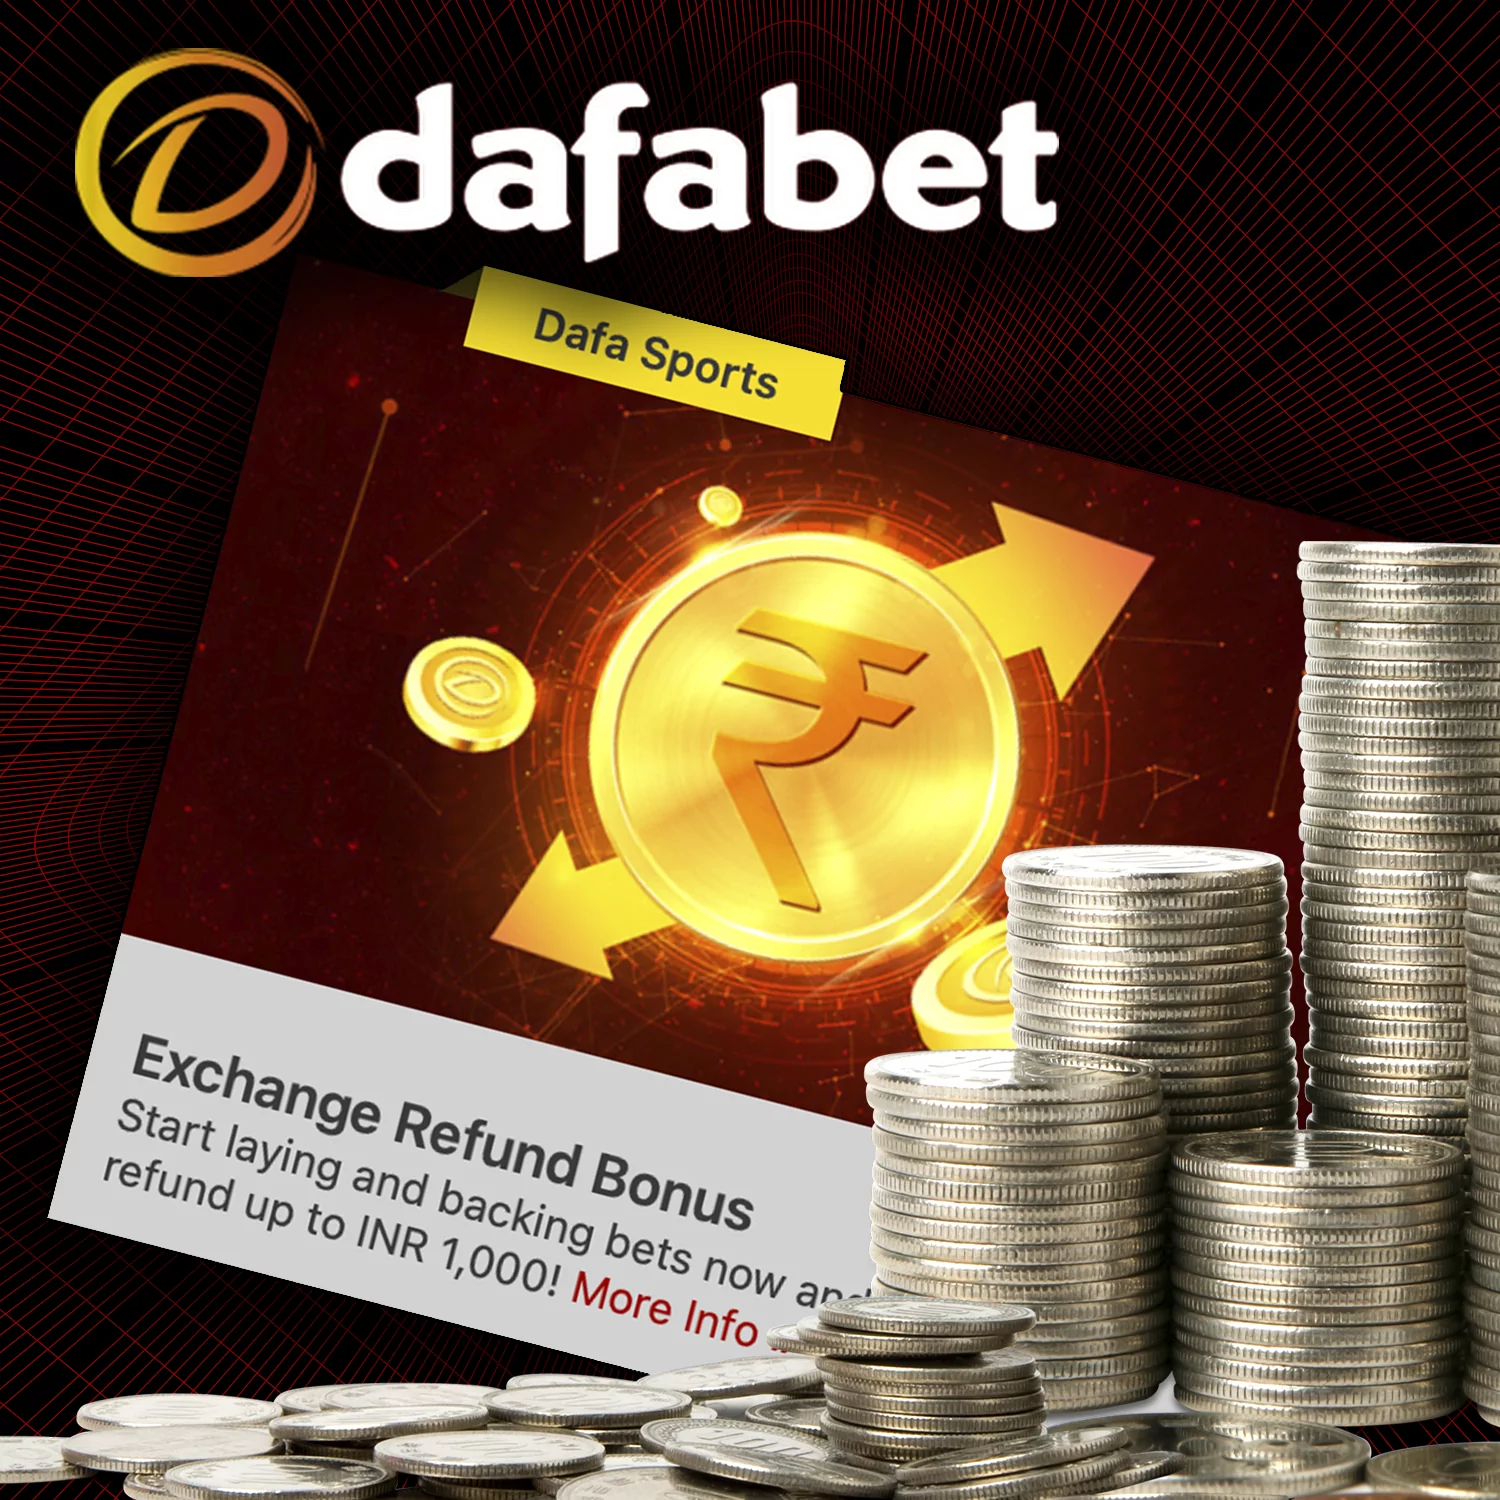 डैफबेट 1,000 रुपये तक का रिफंड प्रदान करता है।